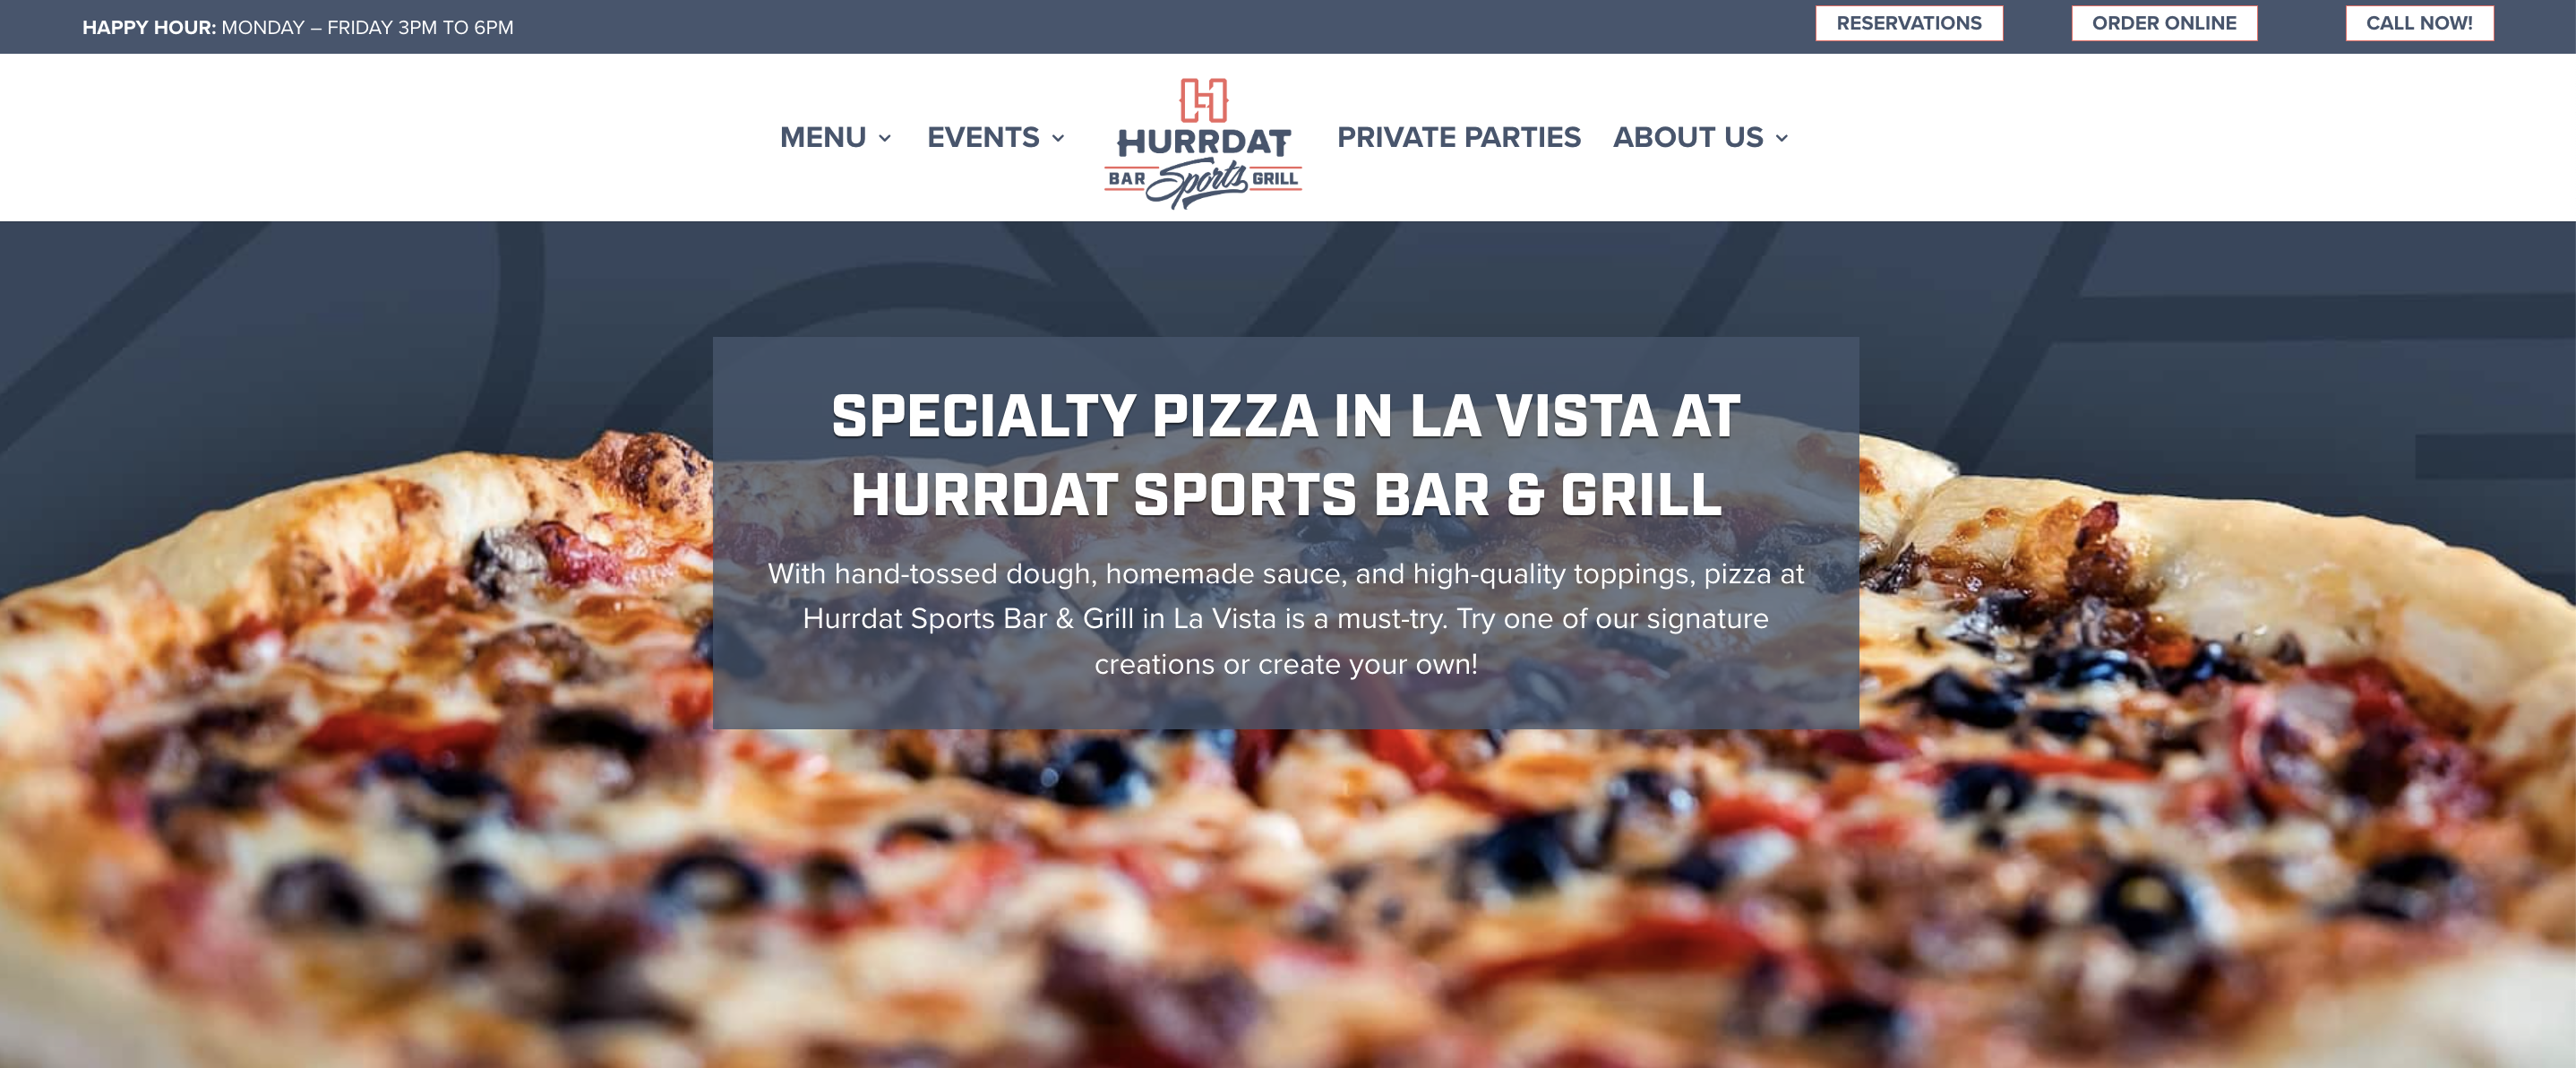 HVC Pizza menu page screenshot